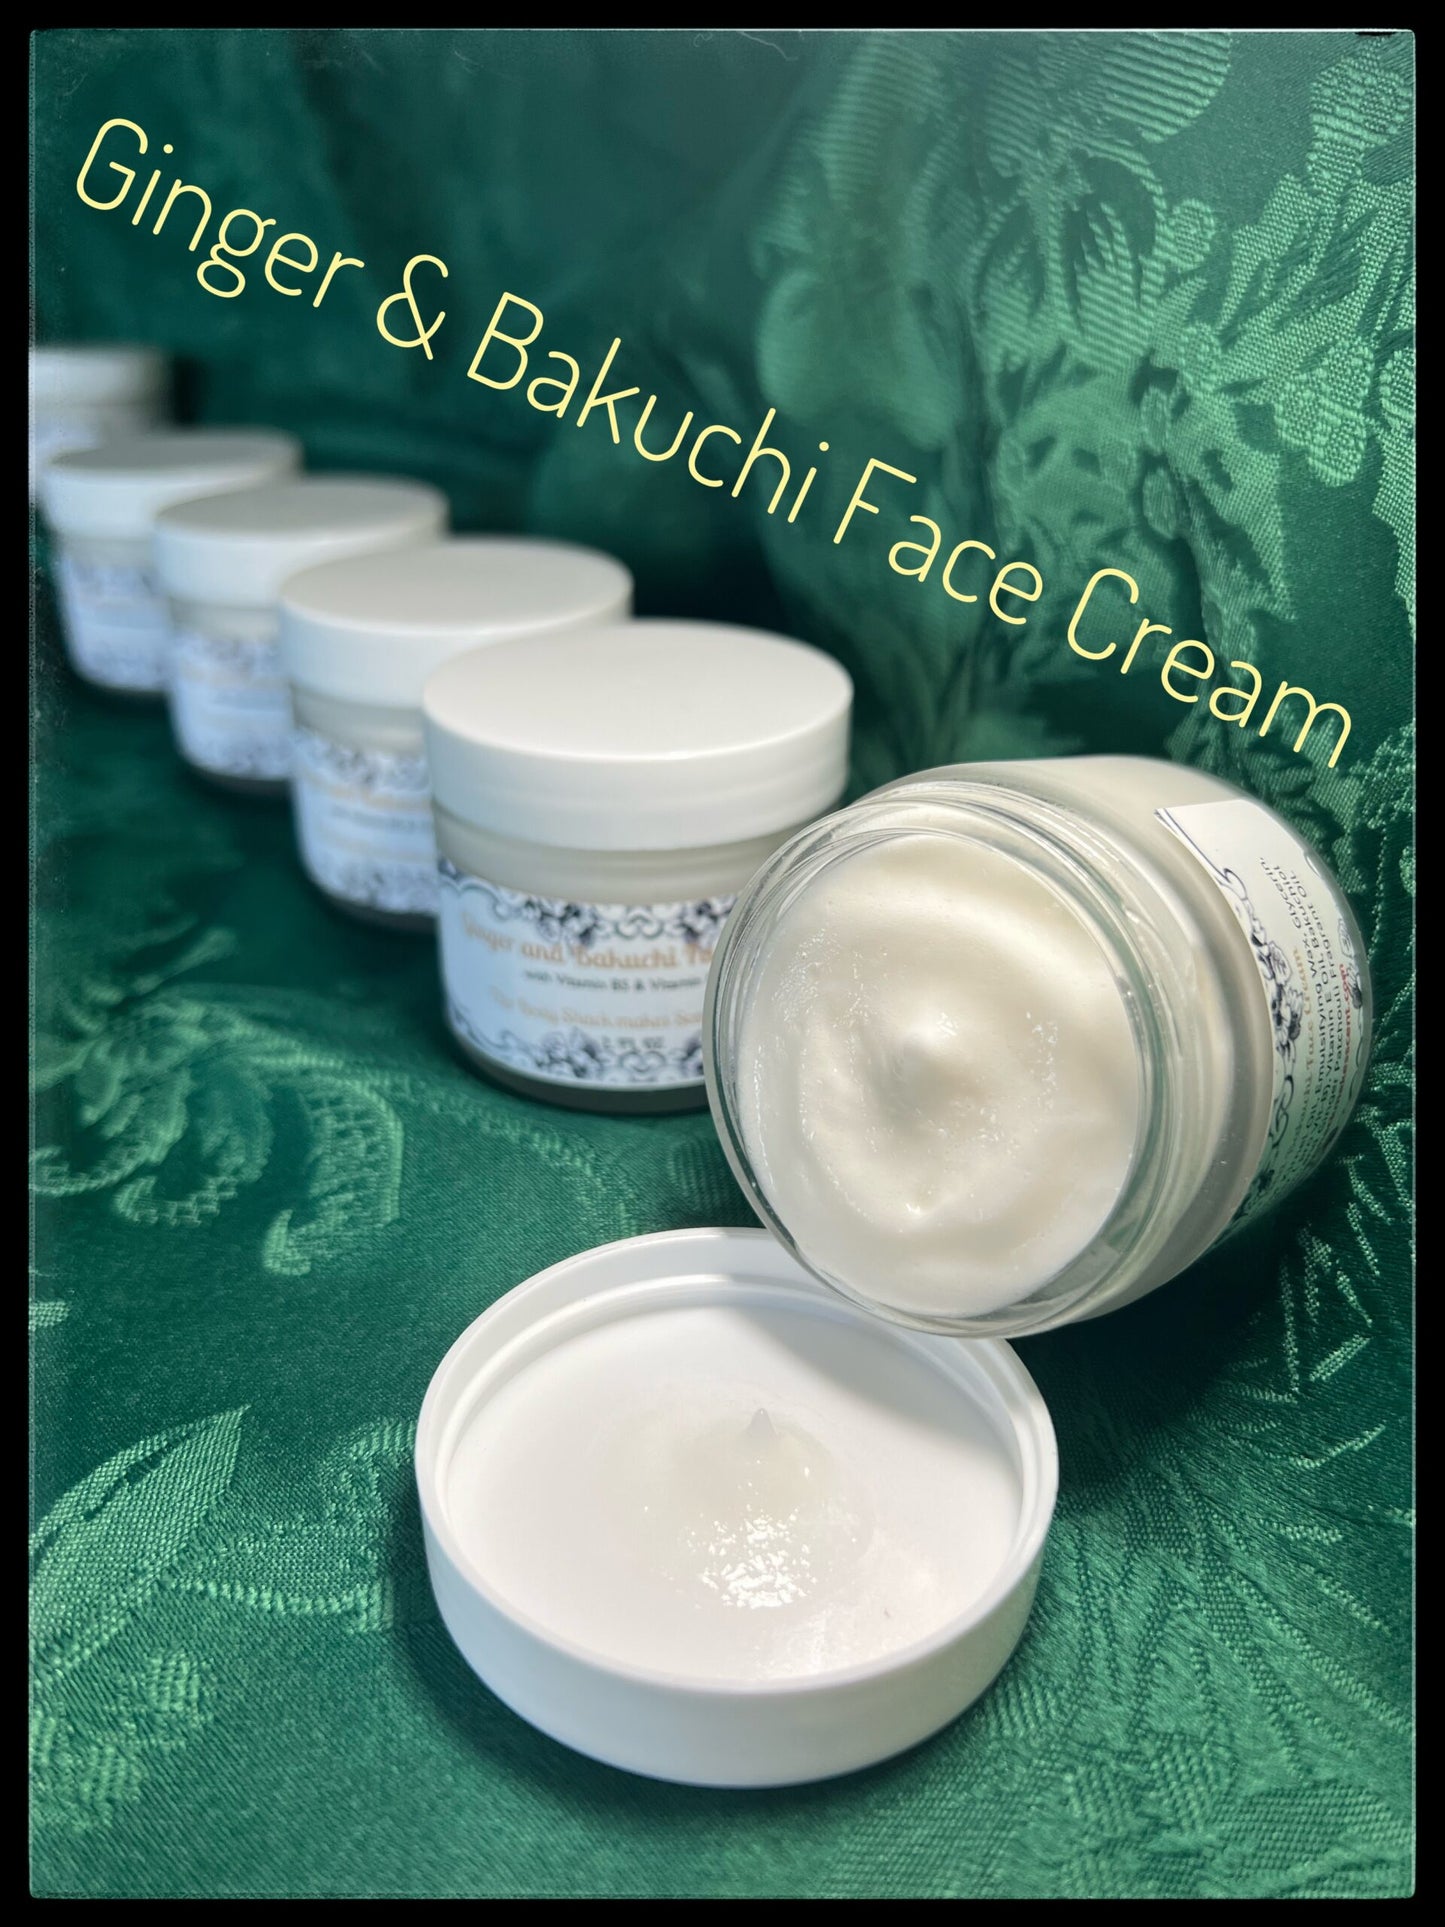 Ginger & Bakuchi Face Cream with Pro Vitamin B-5 & Vitamin E